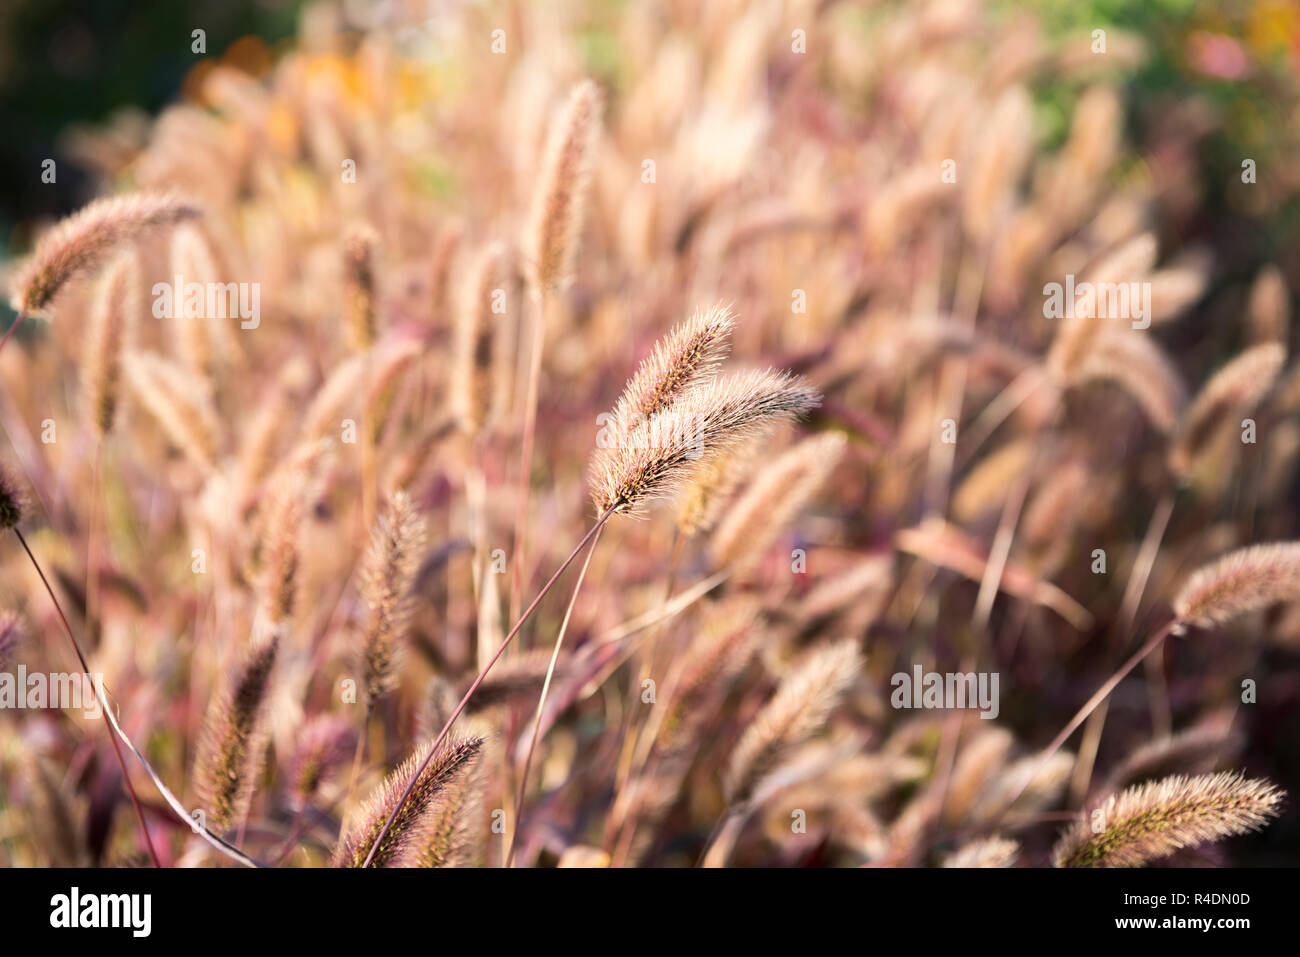 Setaria grass Stock Photo